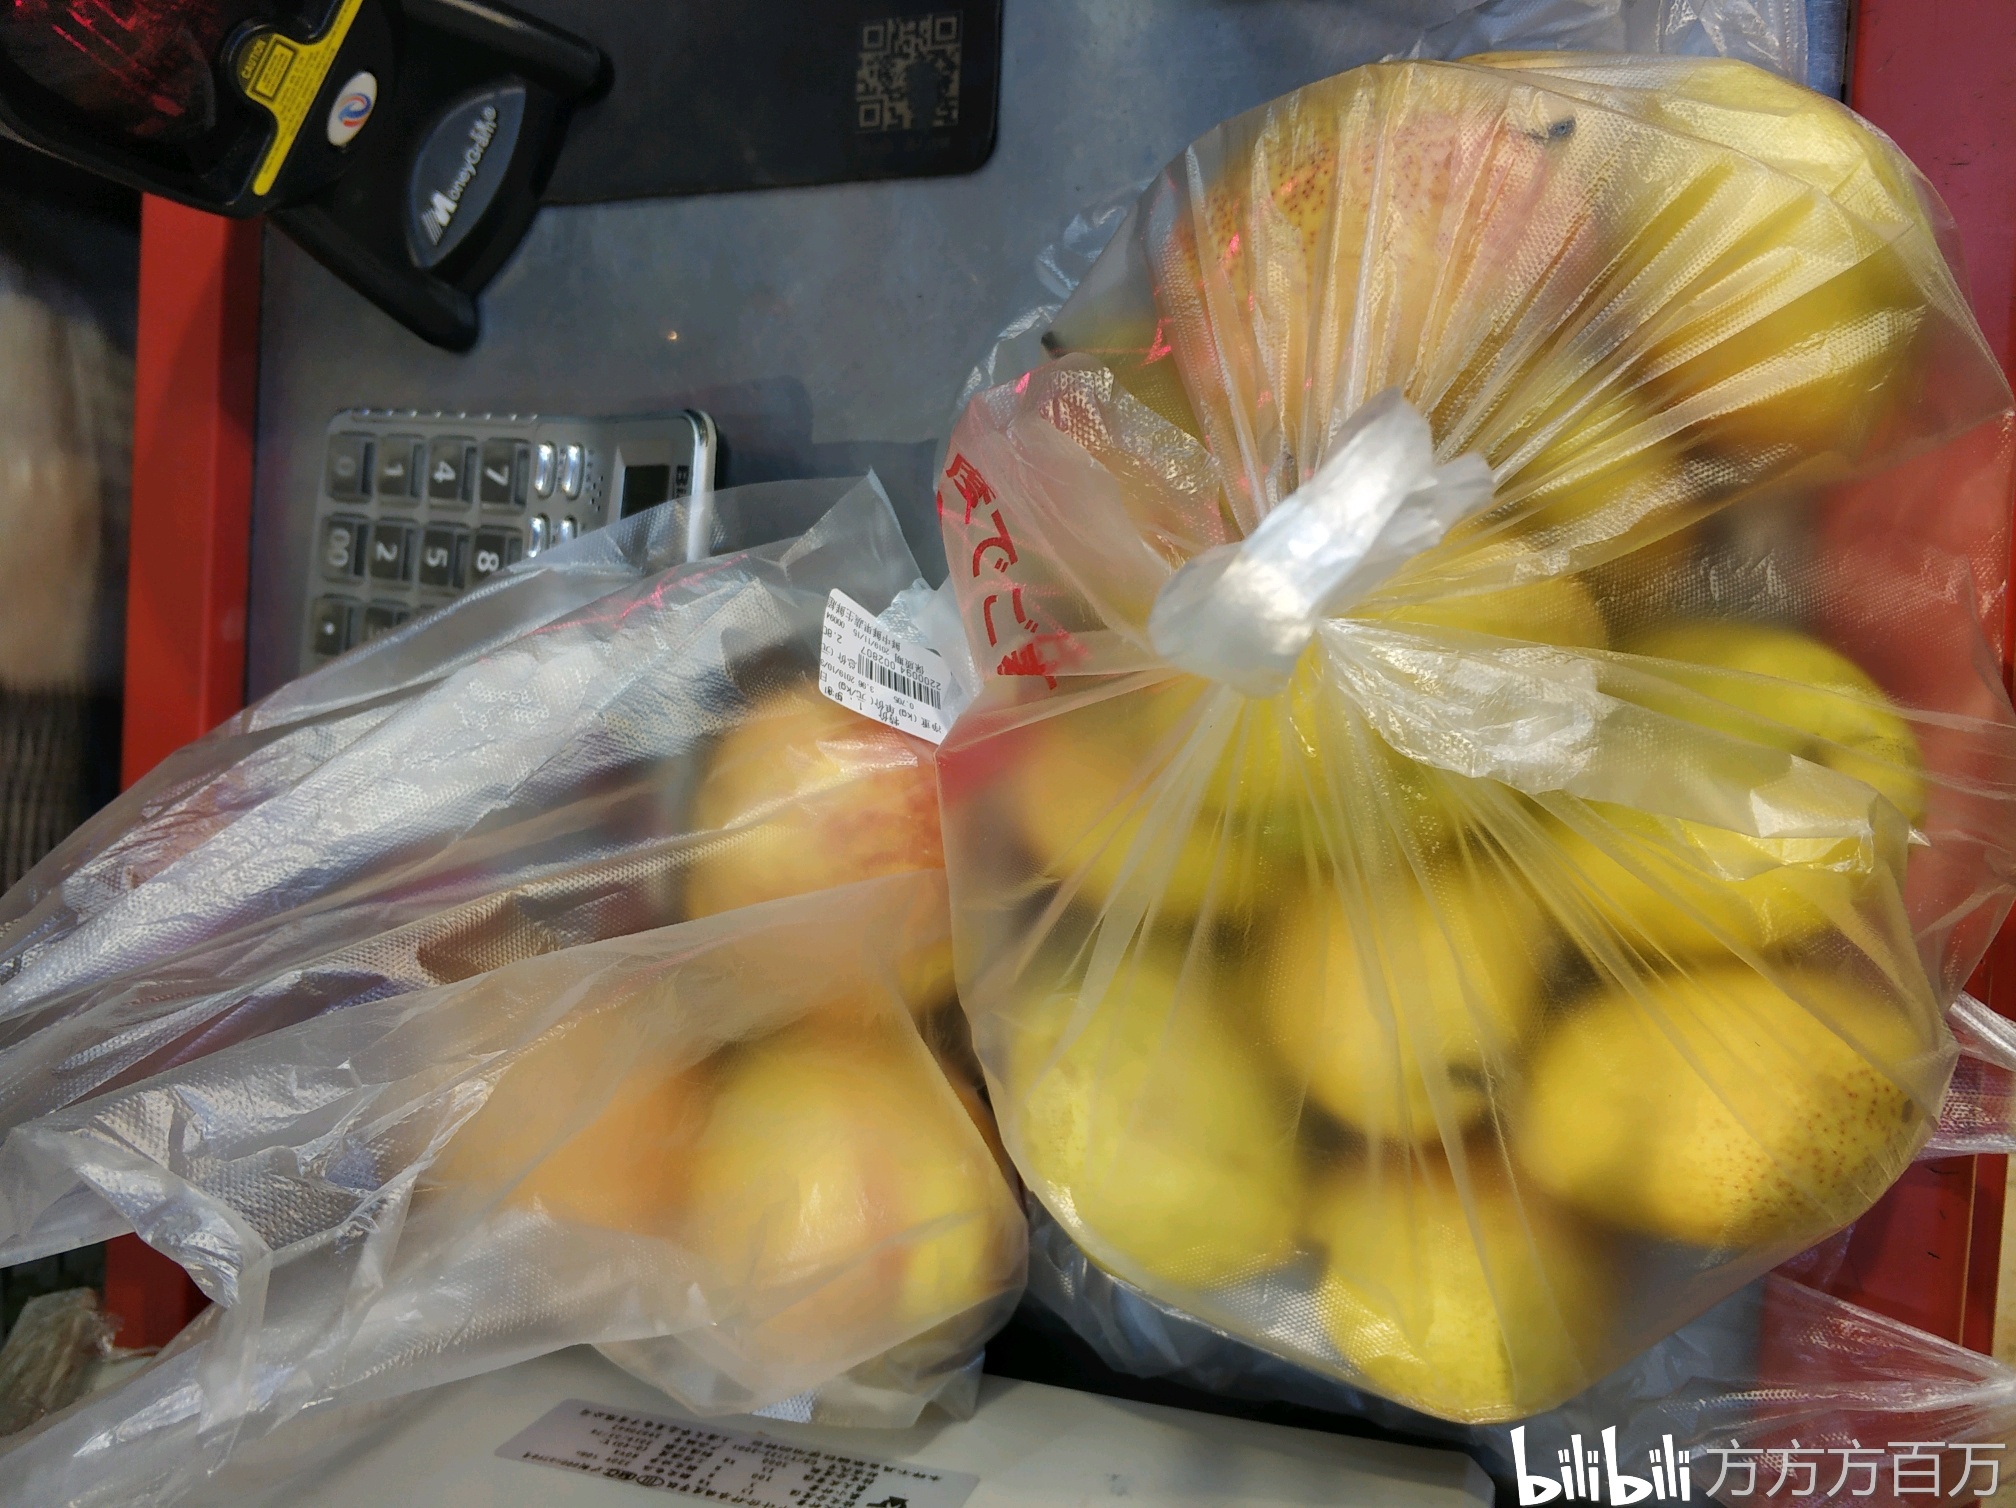 下班回去 买了这么多水果 才只花了五块八 一袋梨三块钱 赚了赚了